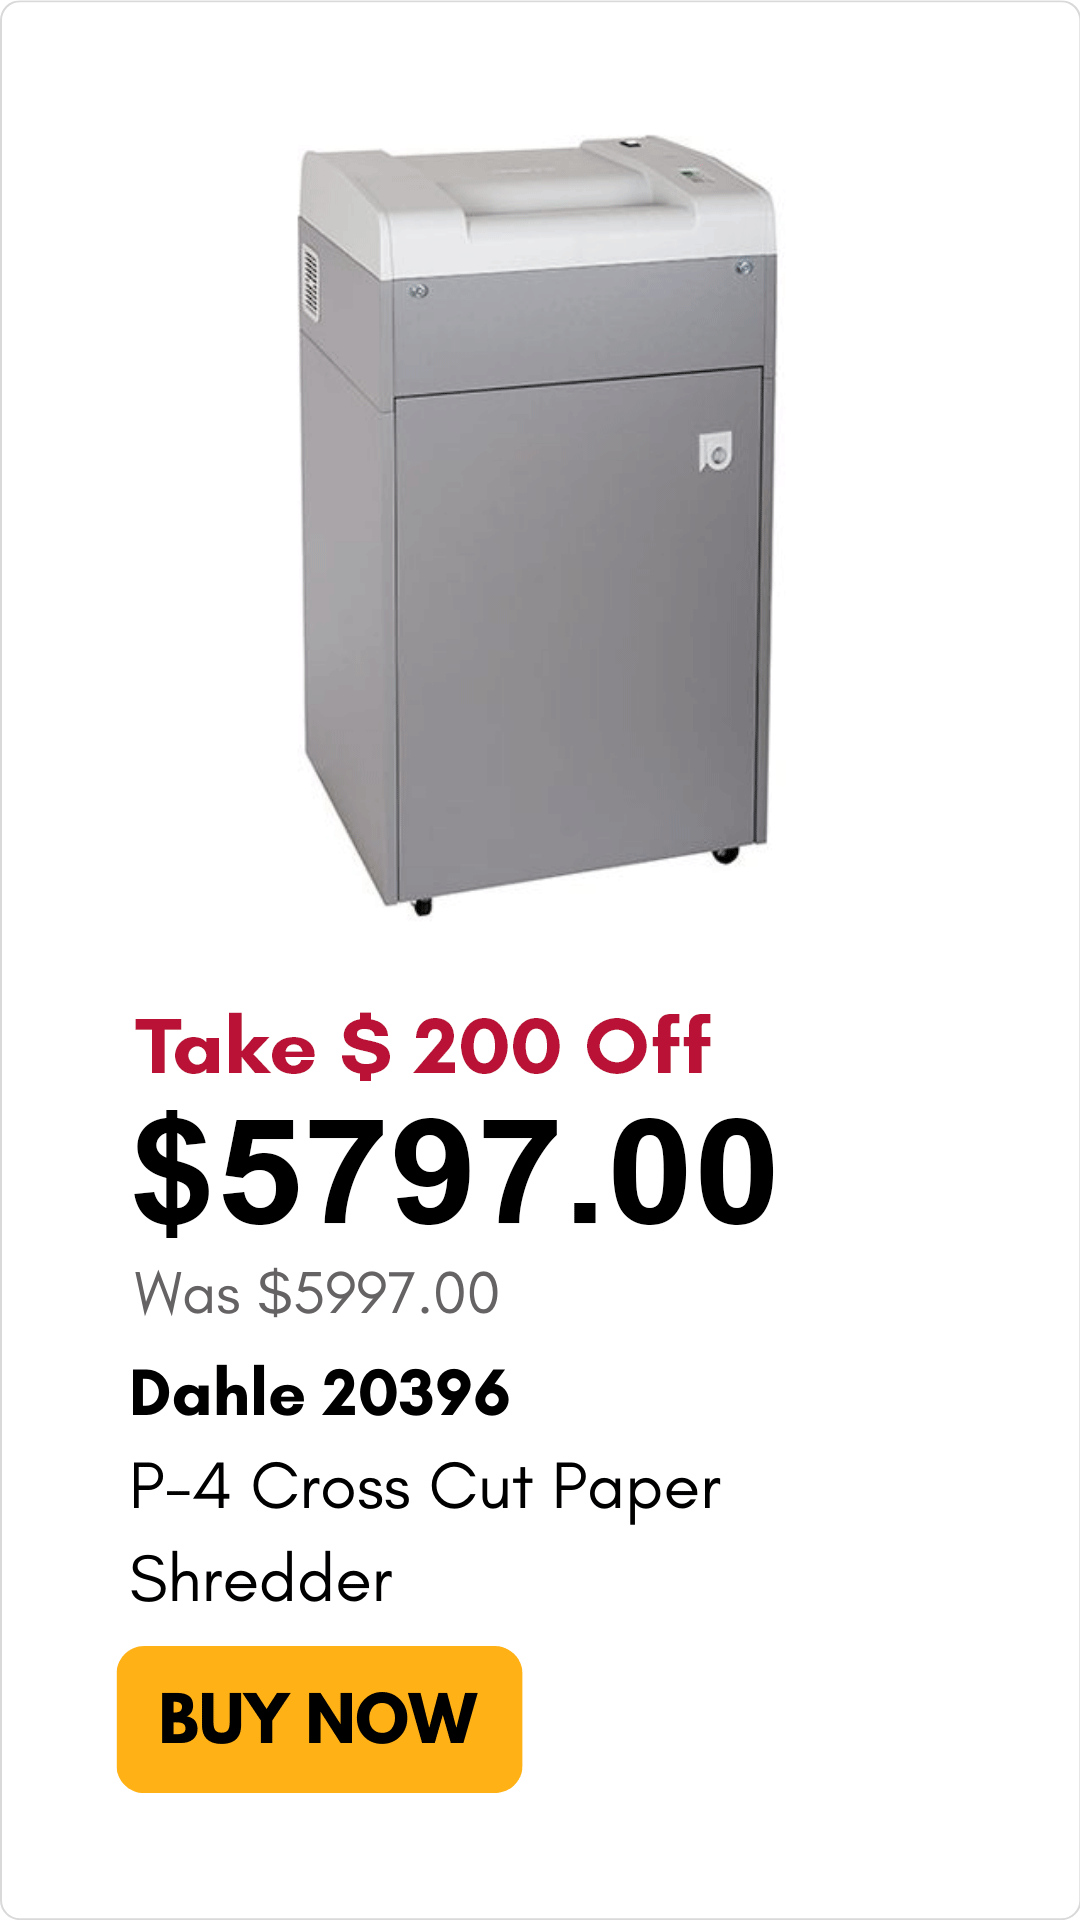 Dahle 20396 shredder on sale for $200 off